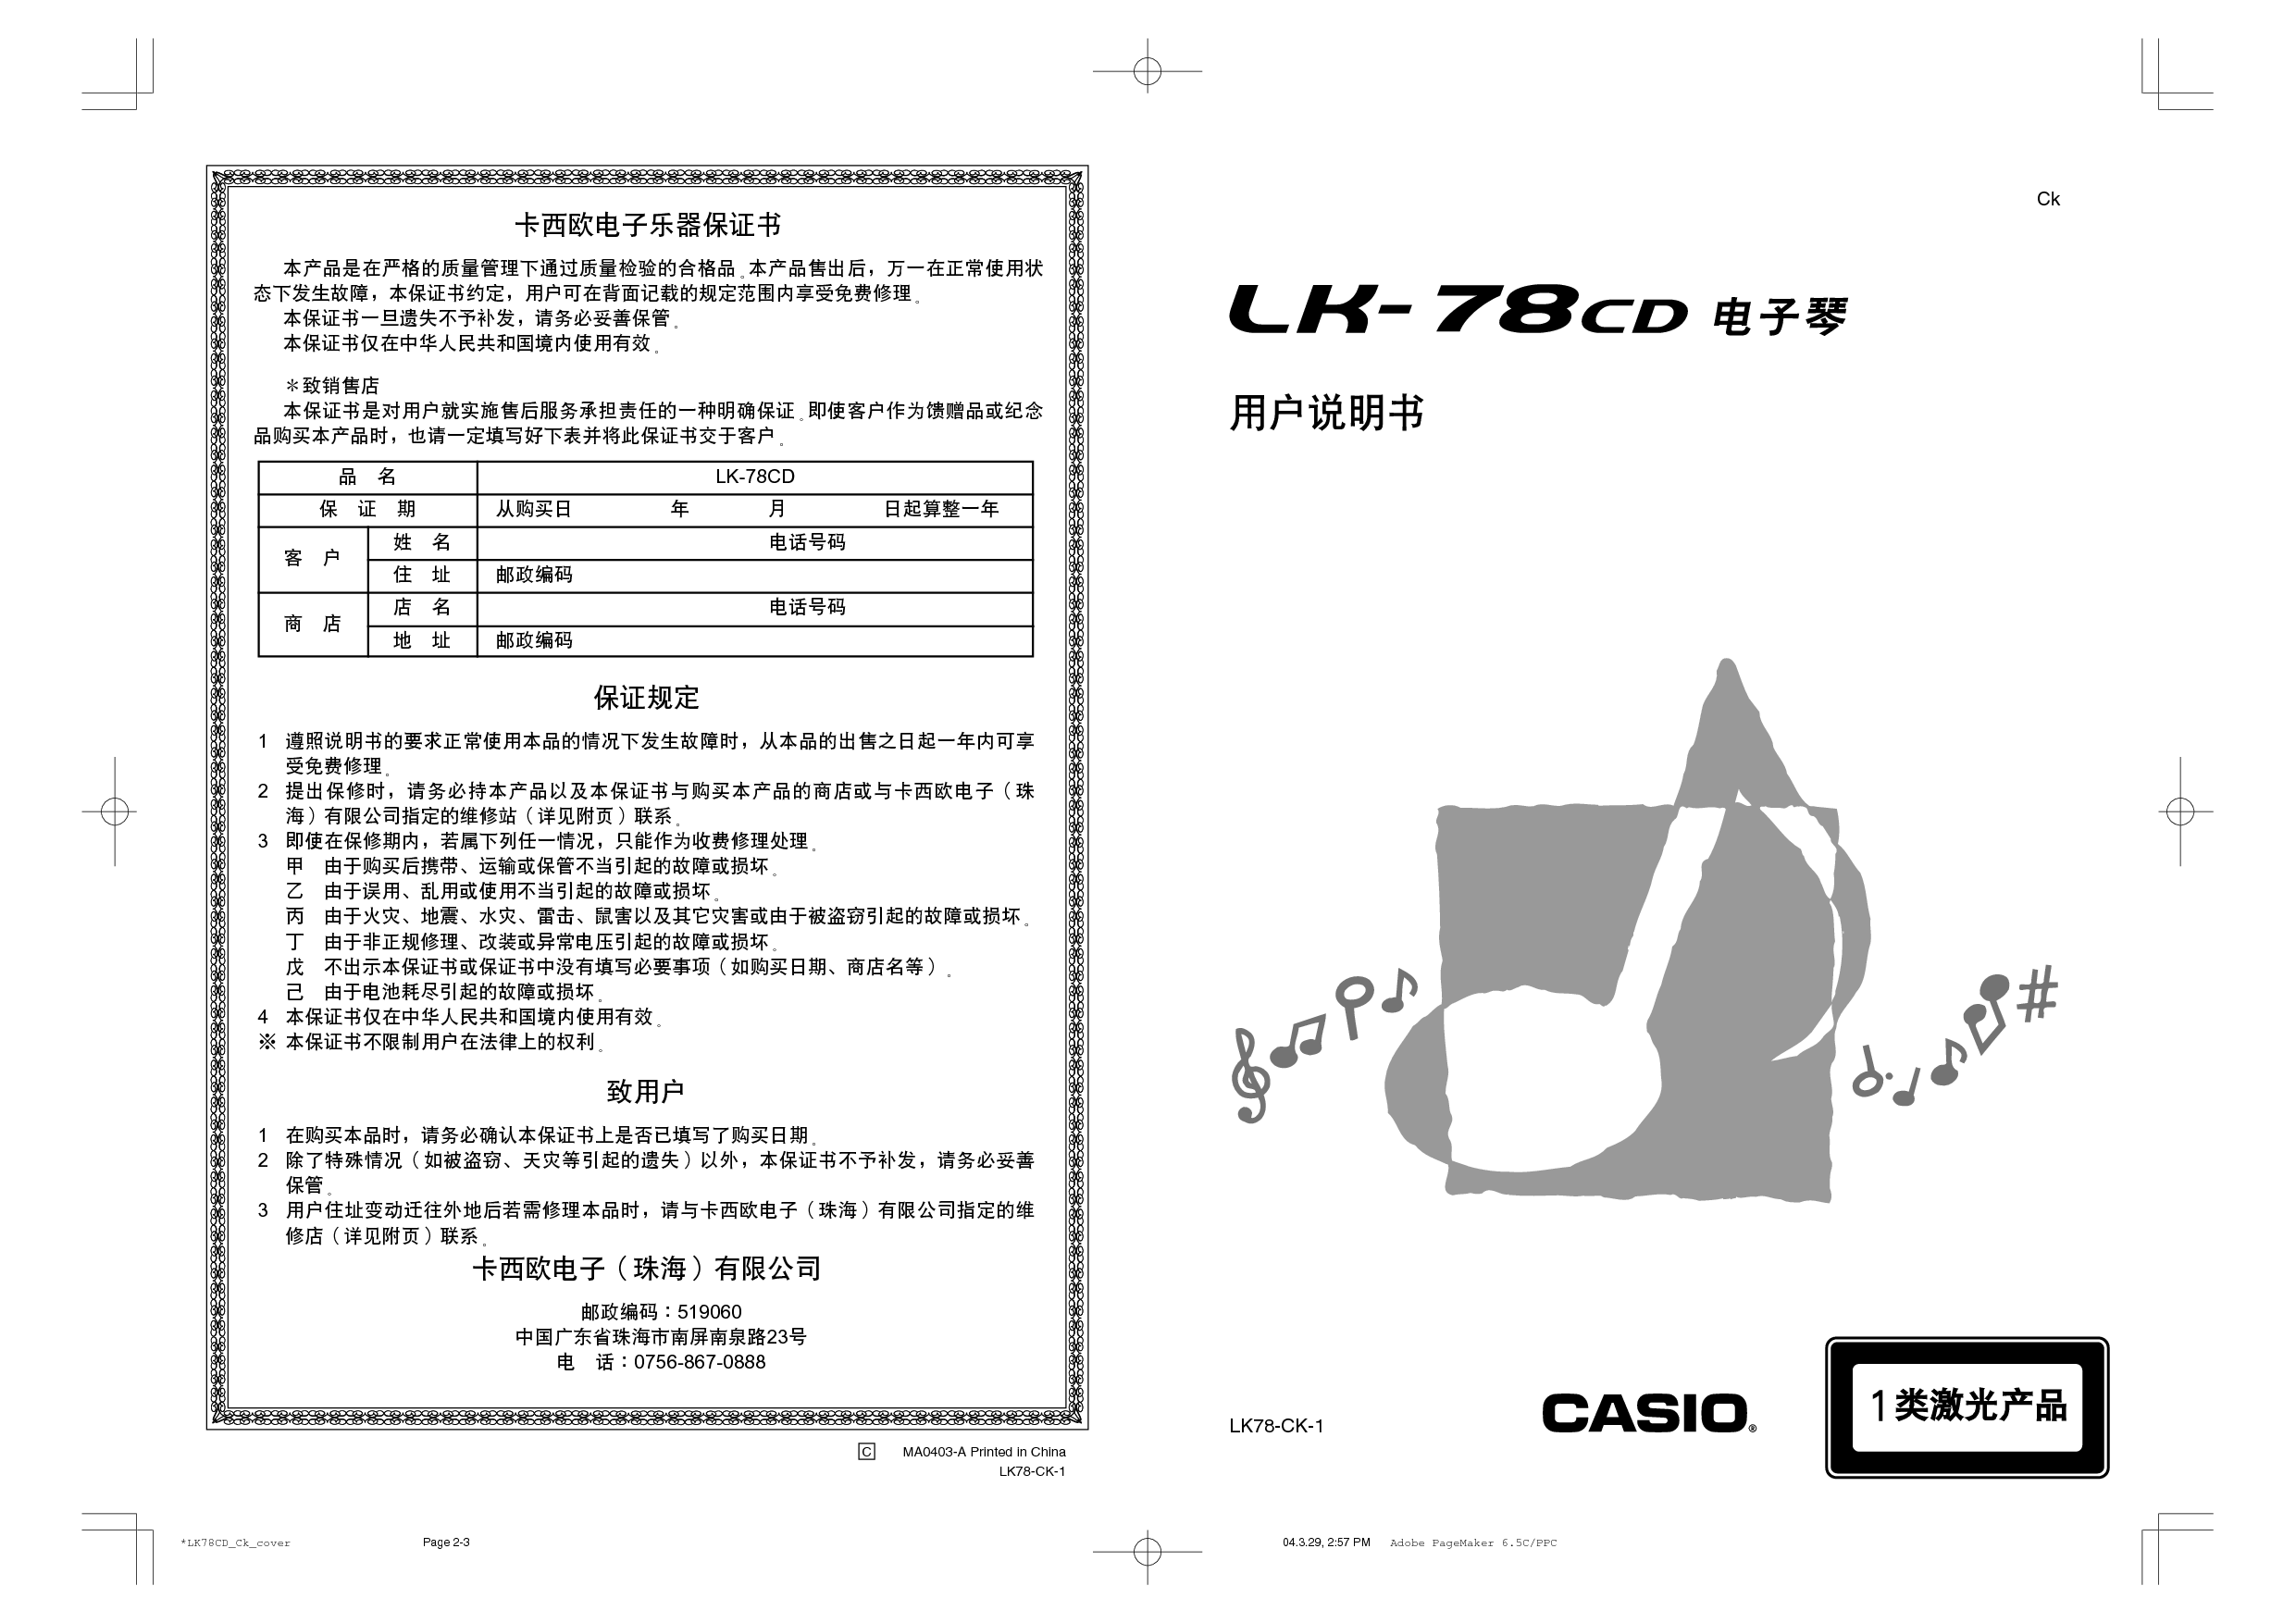 卡西欧 Casio LK-78CD 使用说明书 封面